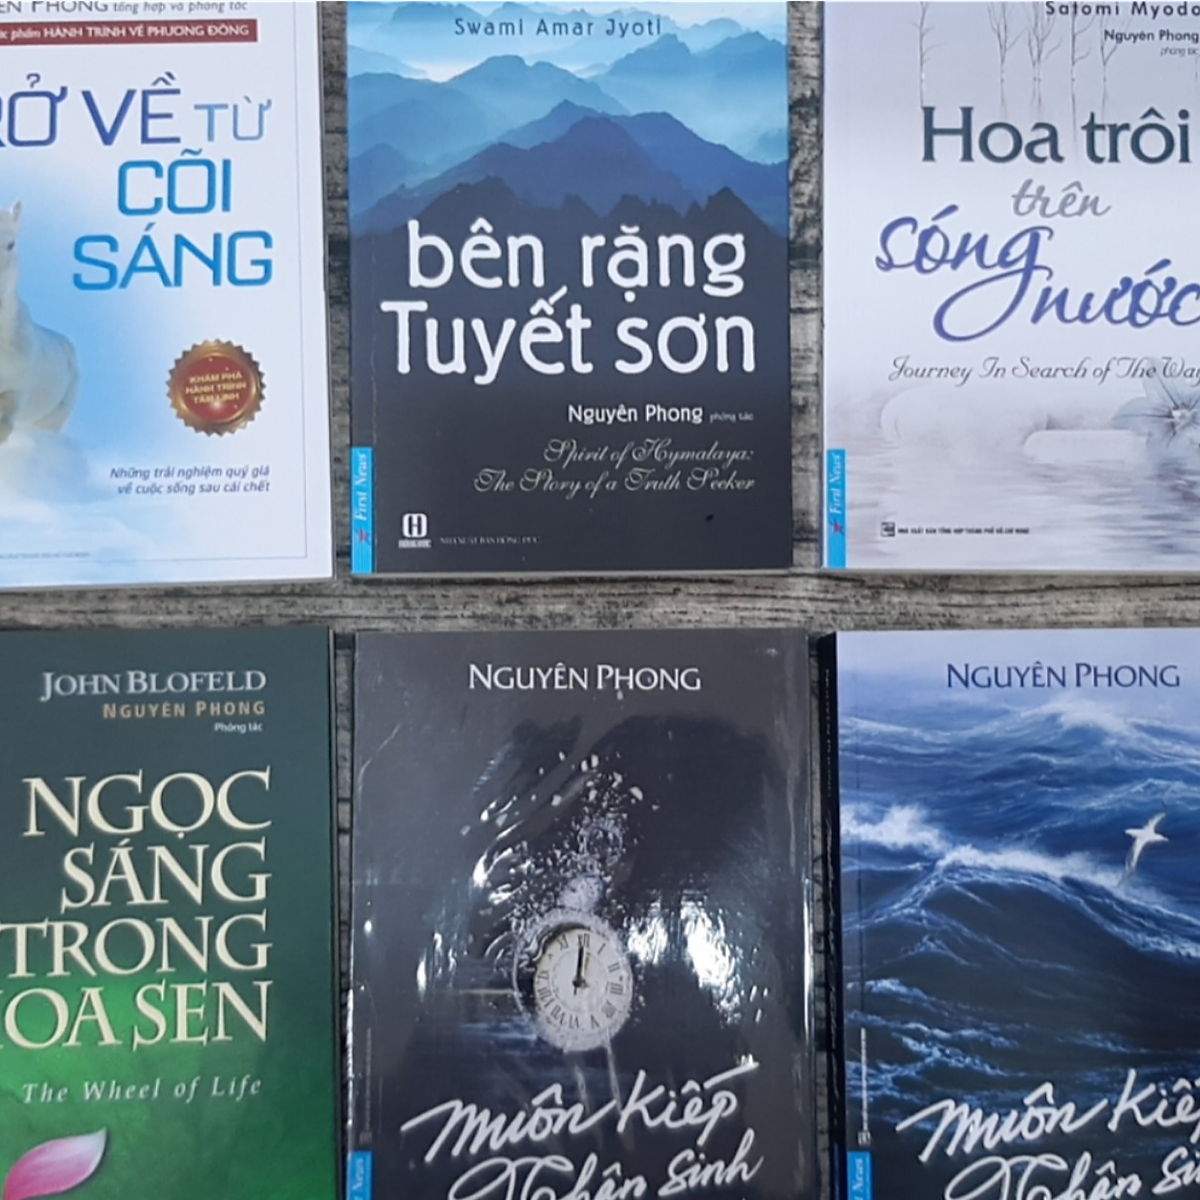 Combo 8 cuốn của tác giả, dịch giả Nguyên Phong